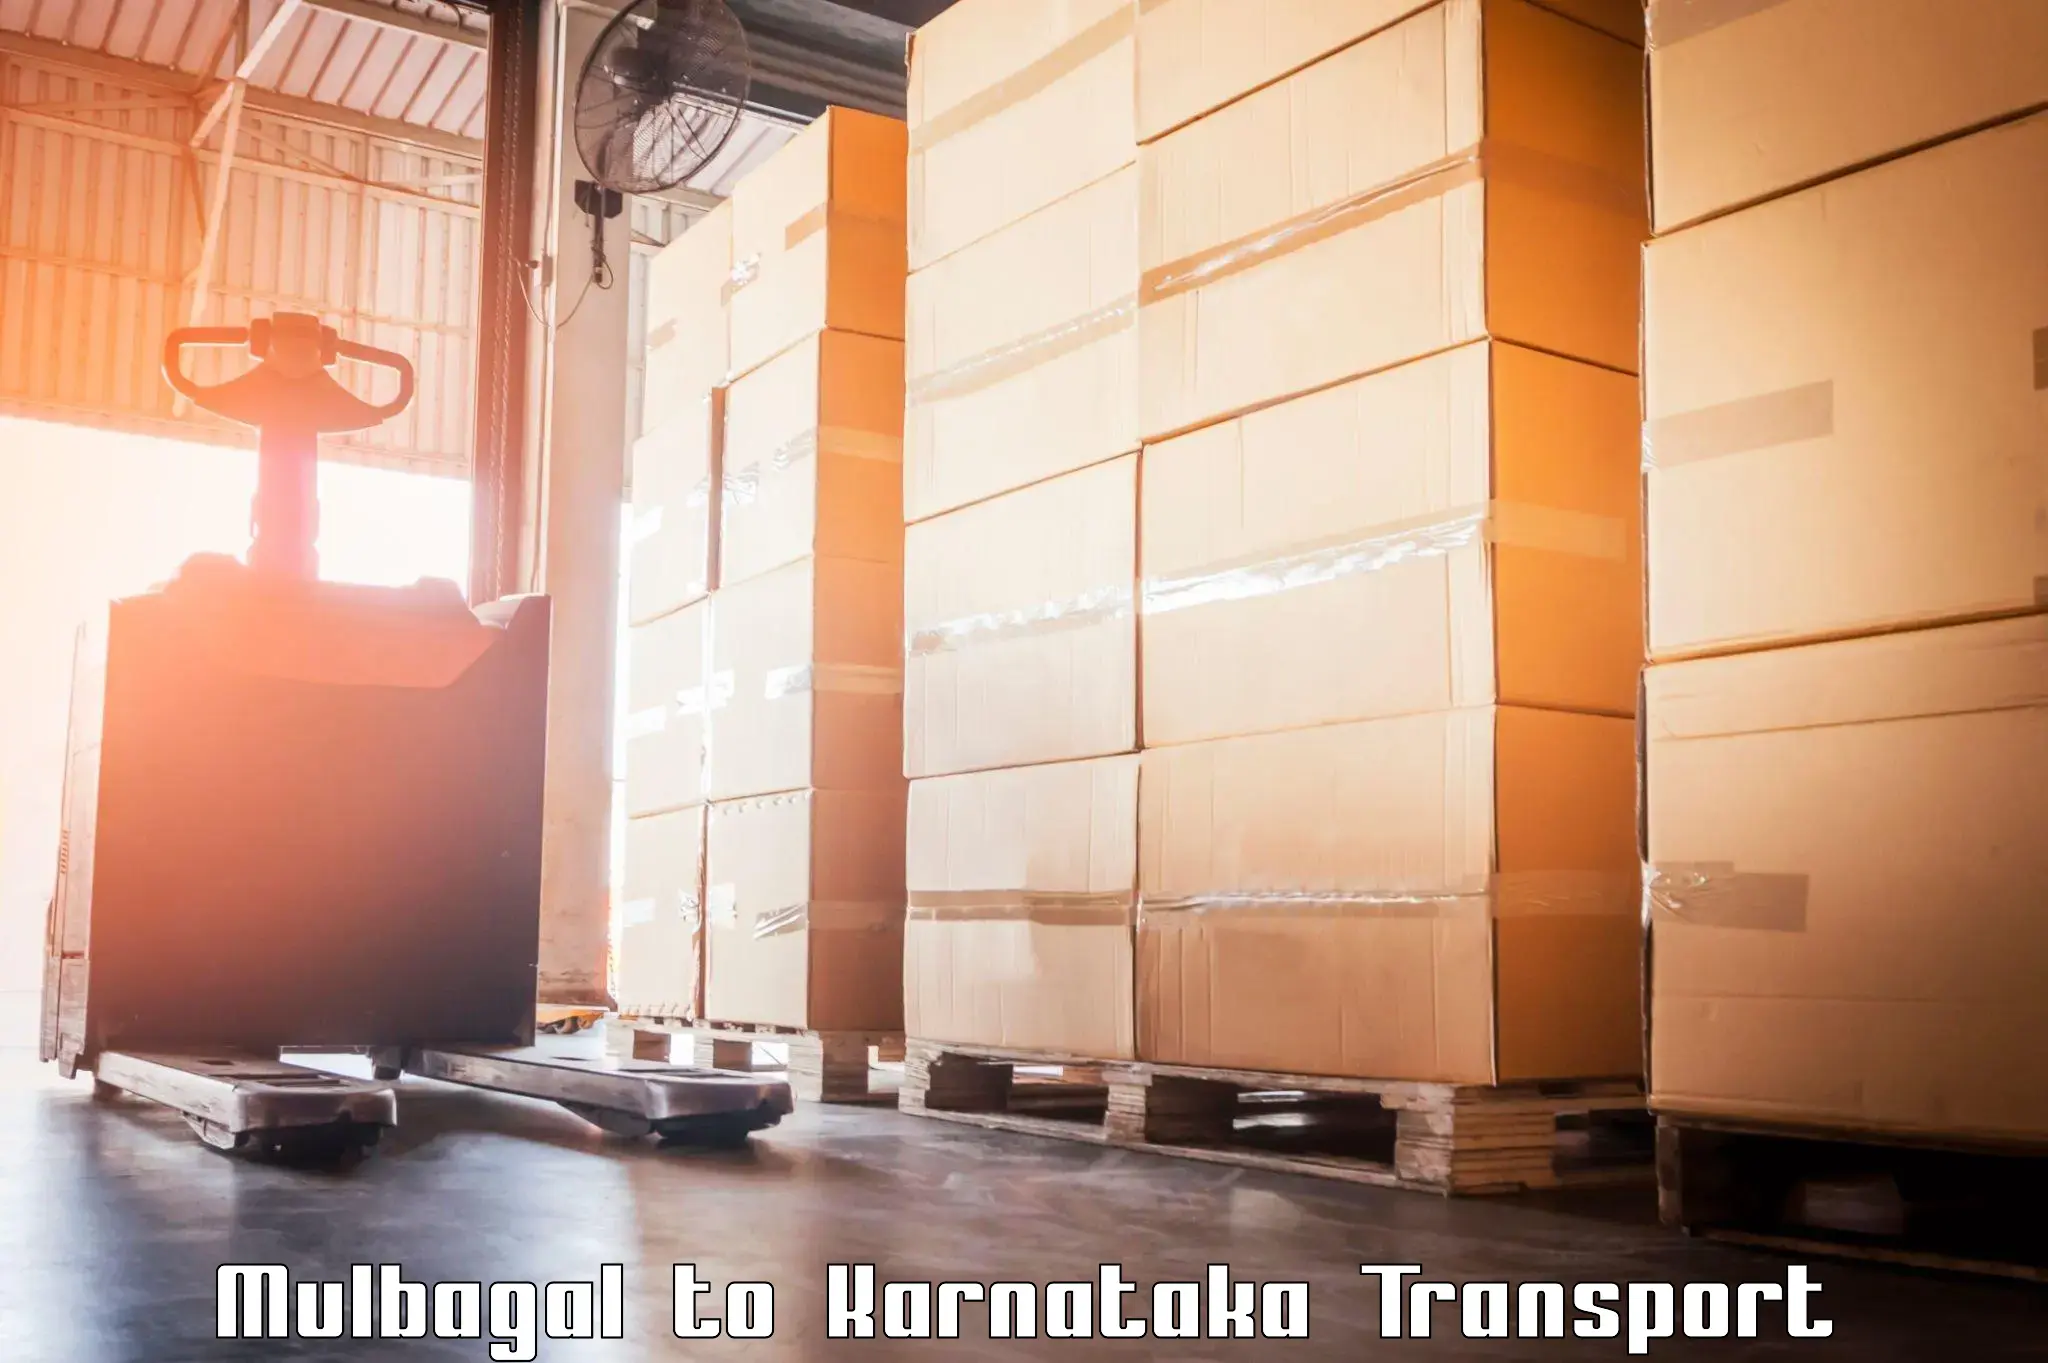 Furniture transport service Mulbagal to Karnataka